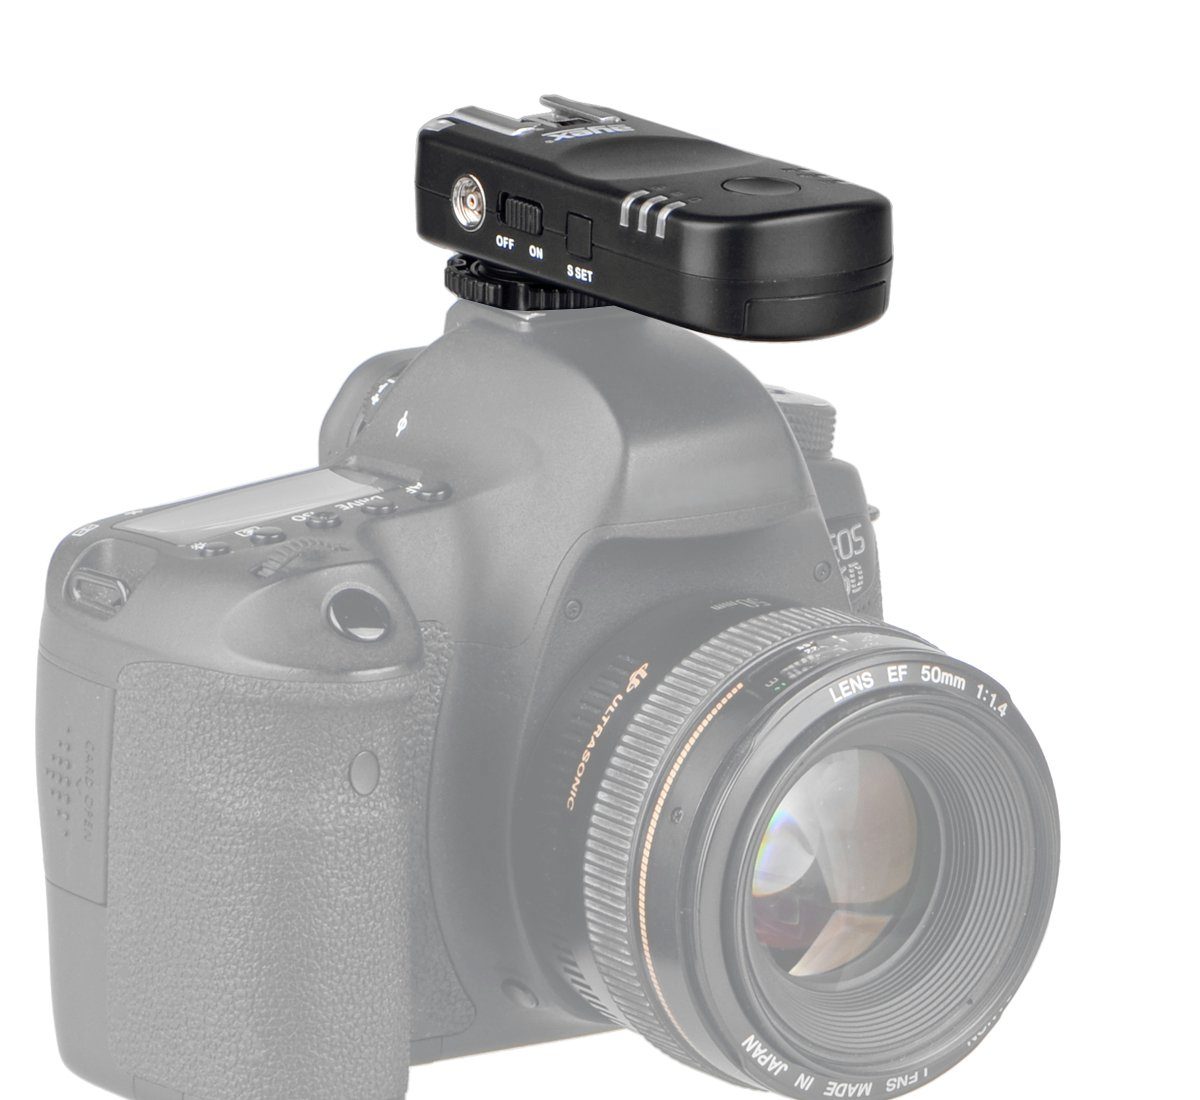 Fernauslöser Blitzauslöser EOS&Powershot ayex für Funk Canon und Kameras Funkfernsteuerung